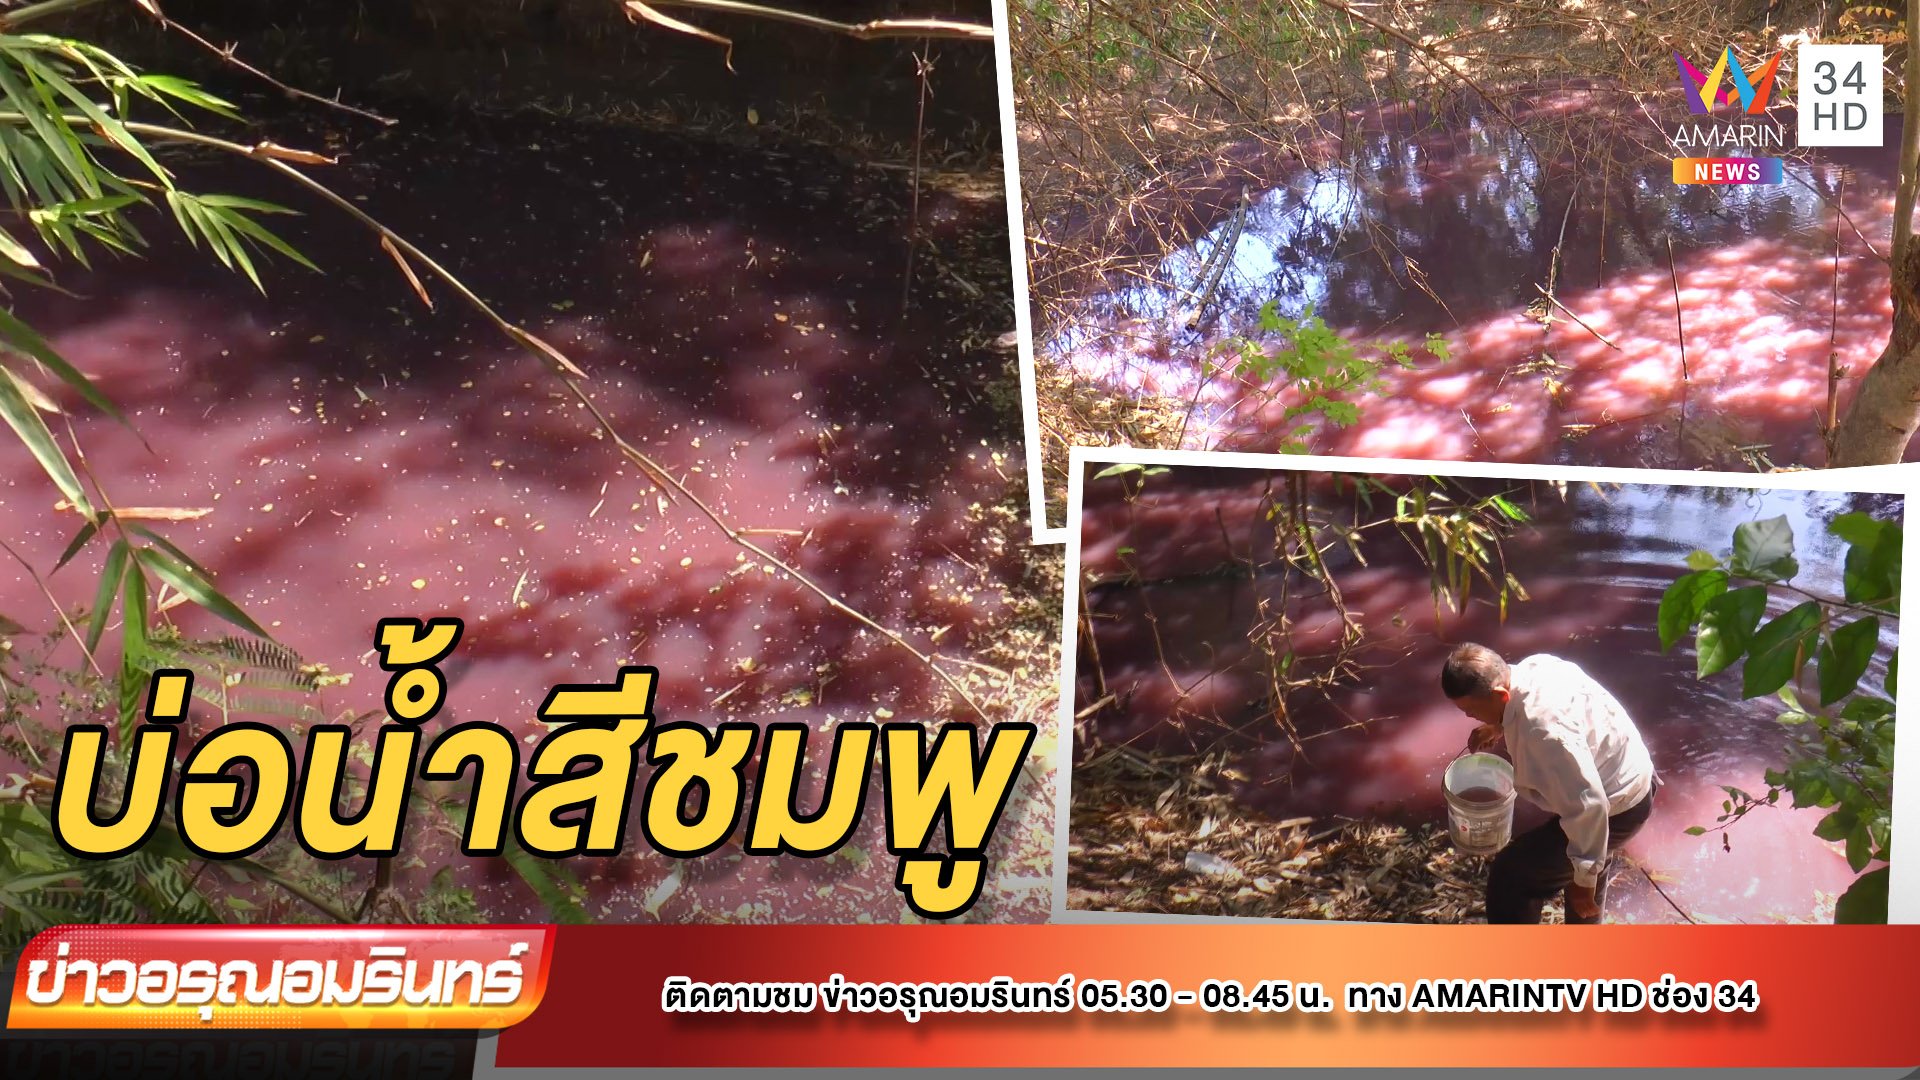 บ่อน้ำประหลาดโผล่เปลี่ยนเป็นสีชมพู – เจ้าของหวั่นอันตราย | ข่าวอรุณอมรินทร์ | 24 ก.พ. 65 | AMARIN TVHD34